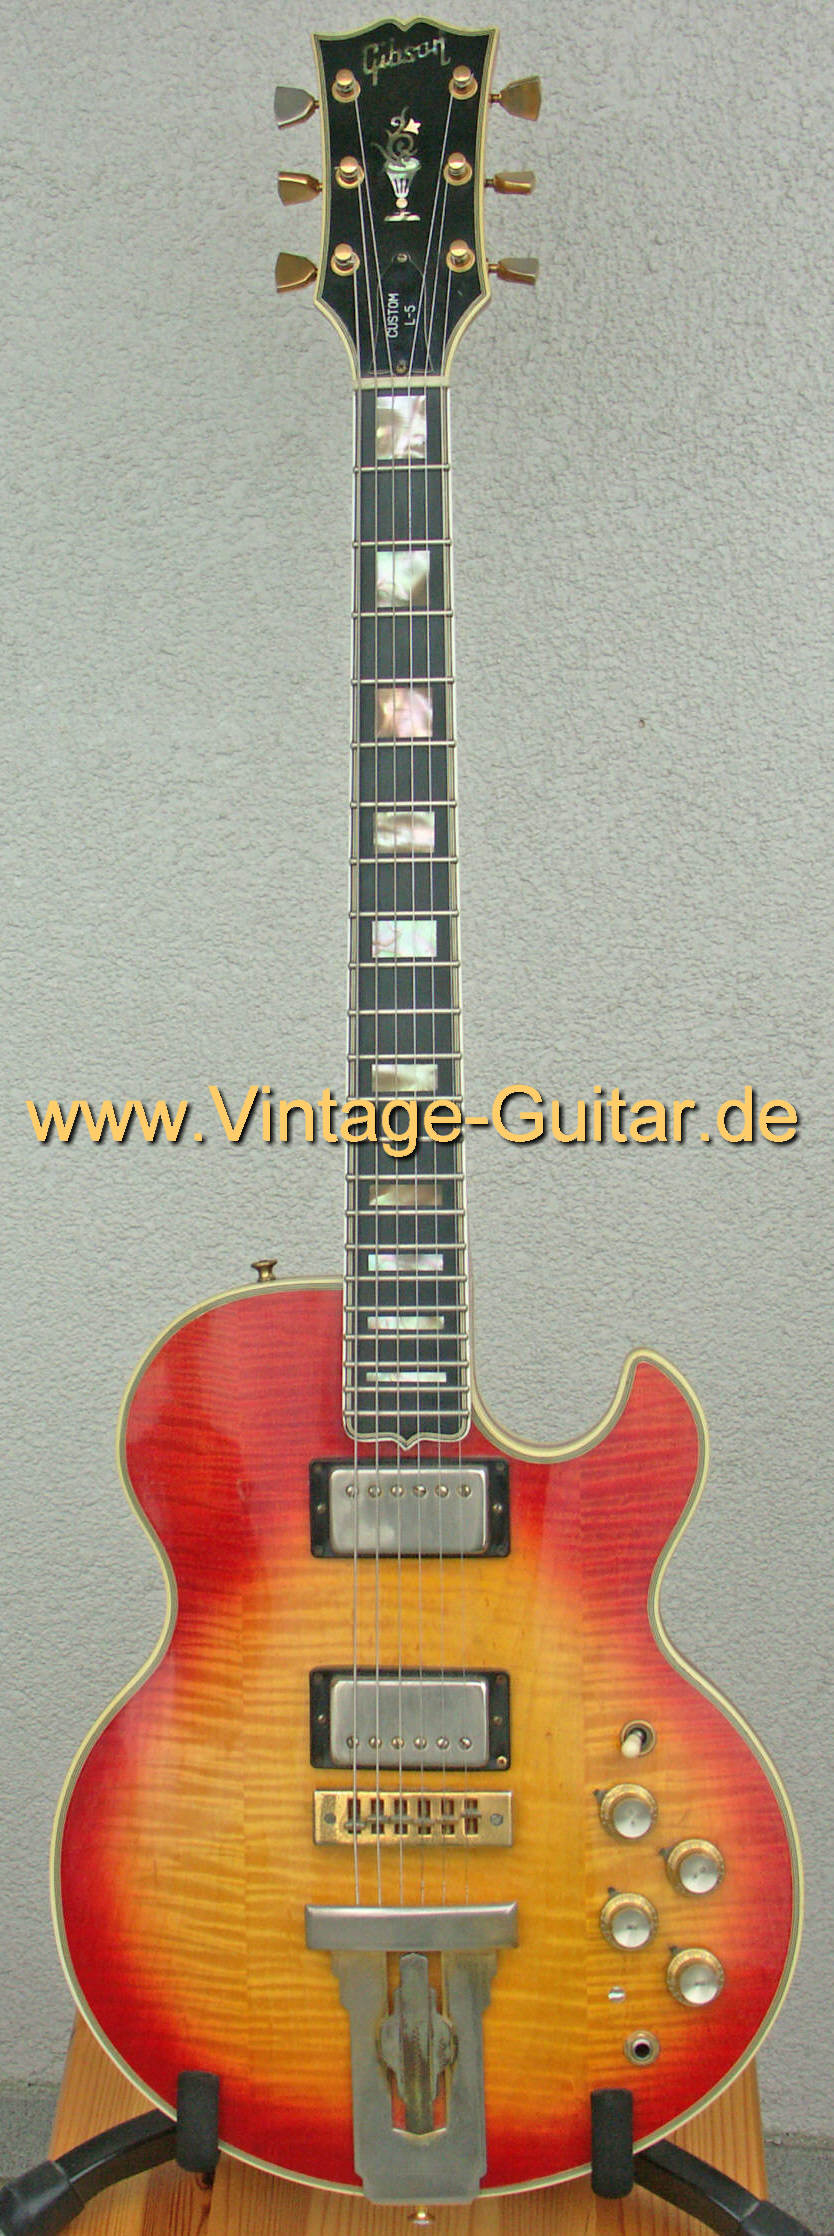 Gibson-L-5S-1974-a.jpg